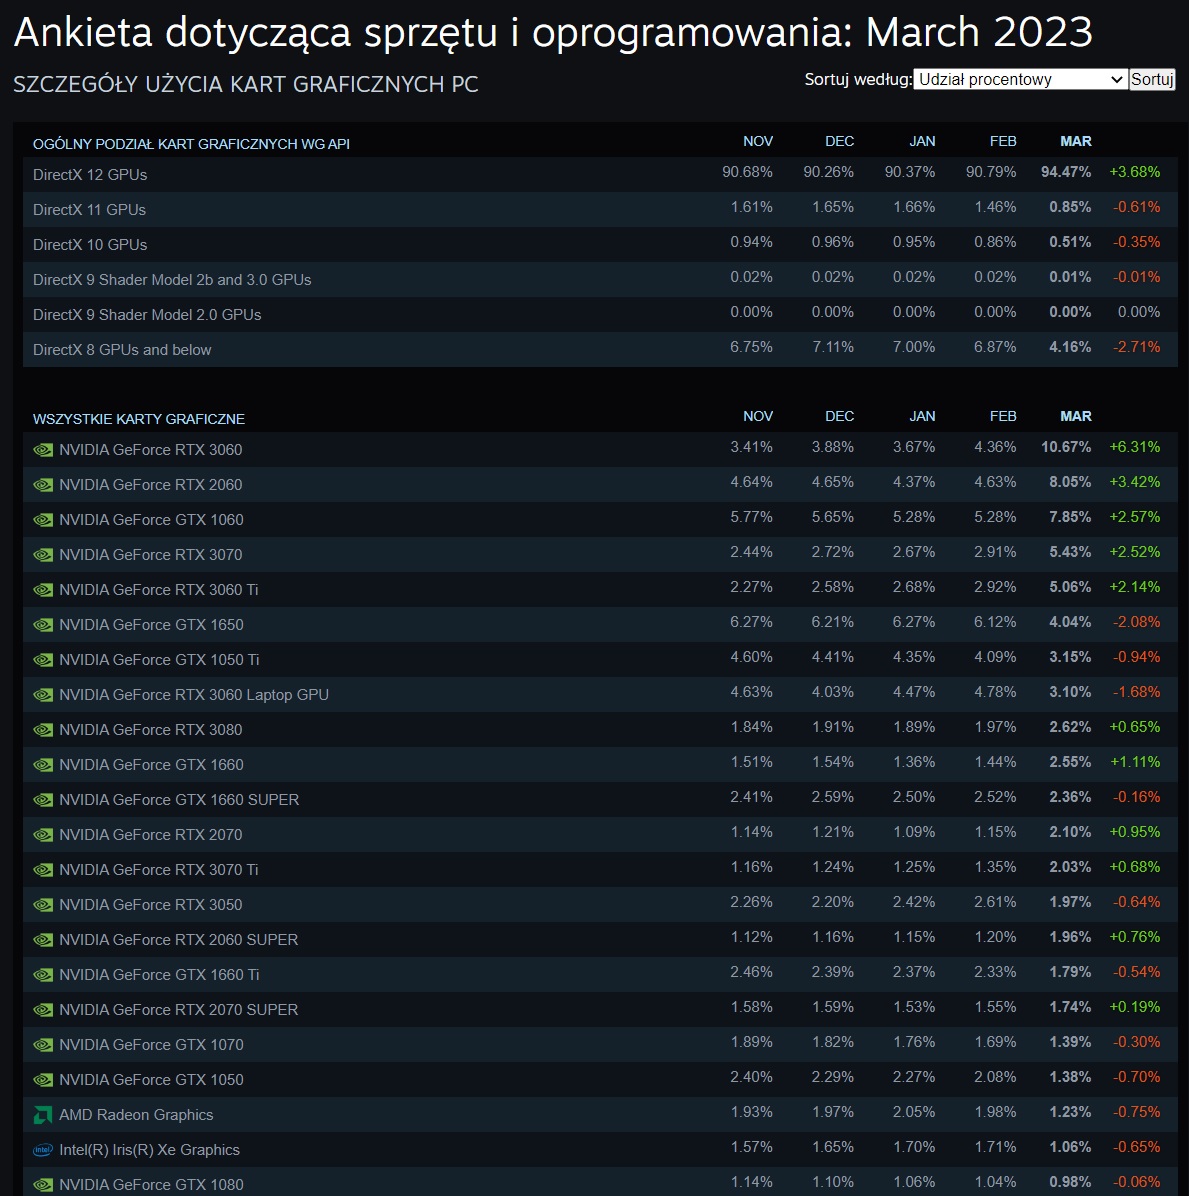 Ankieta Steam marzec 2023